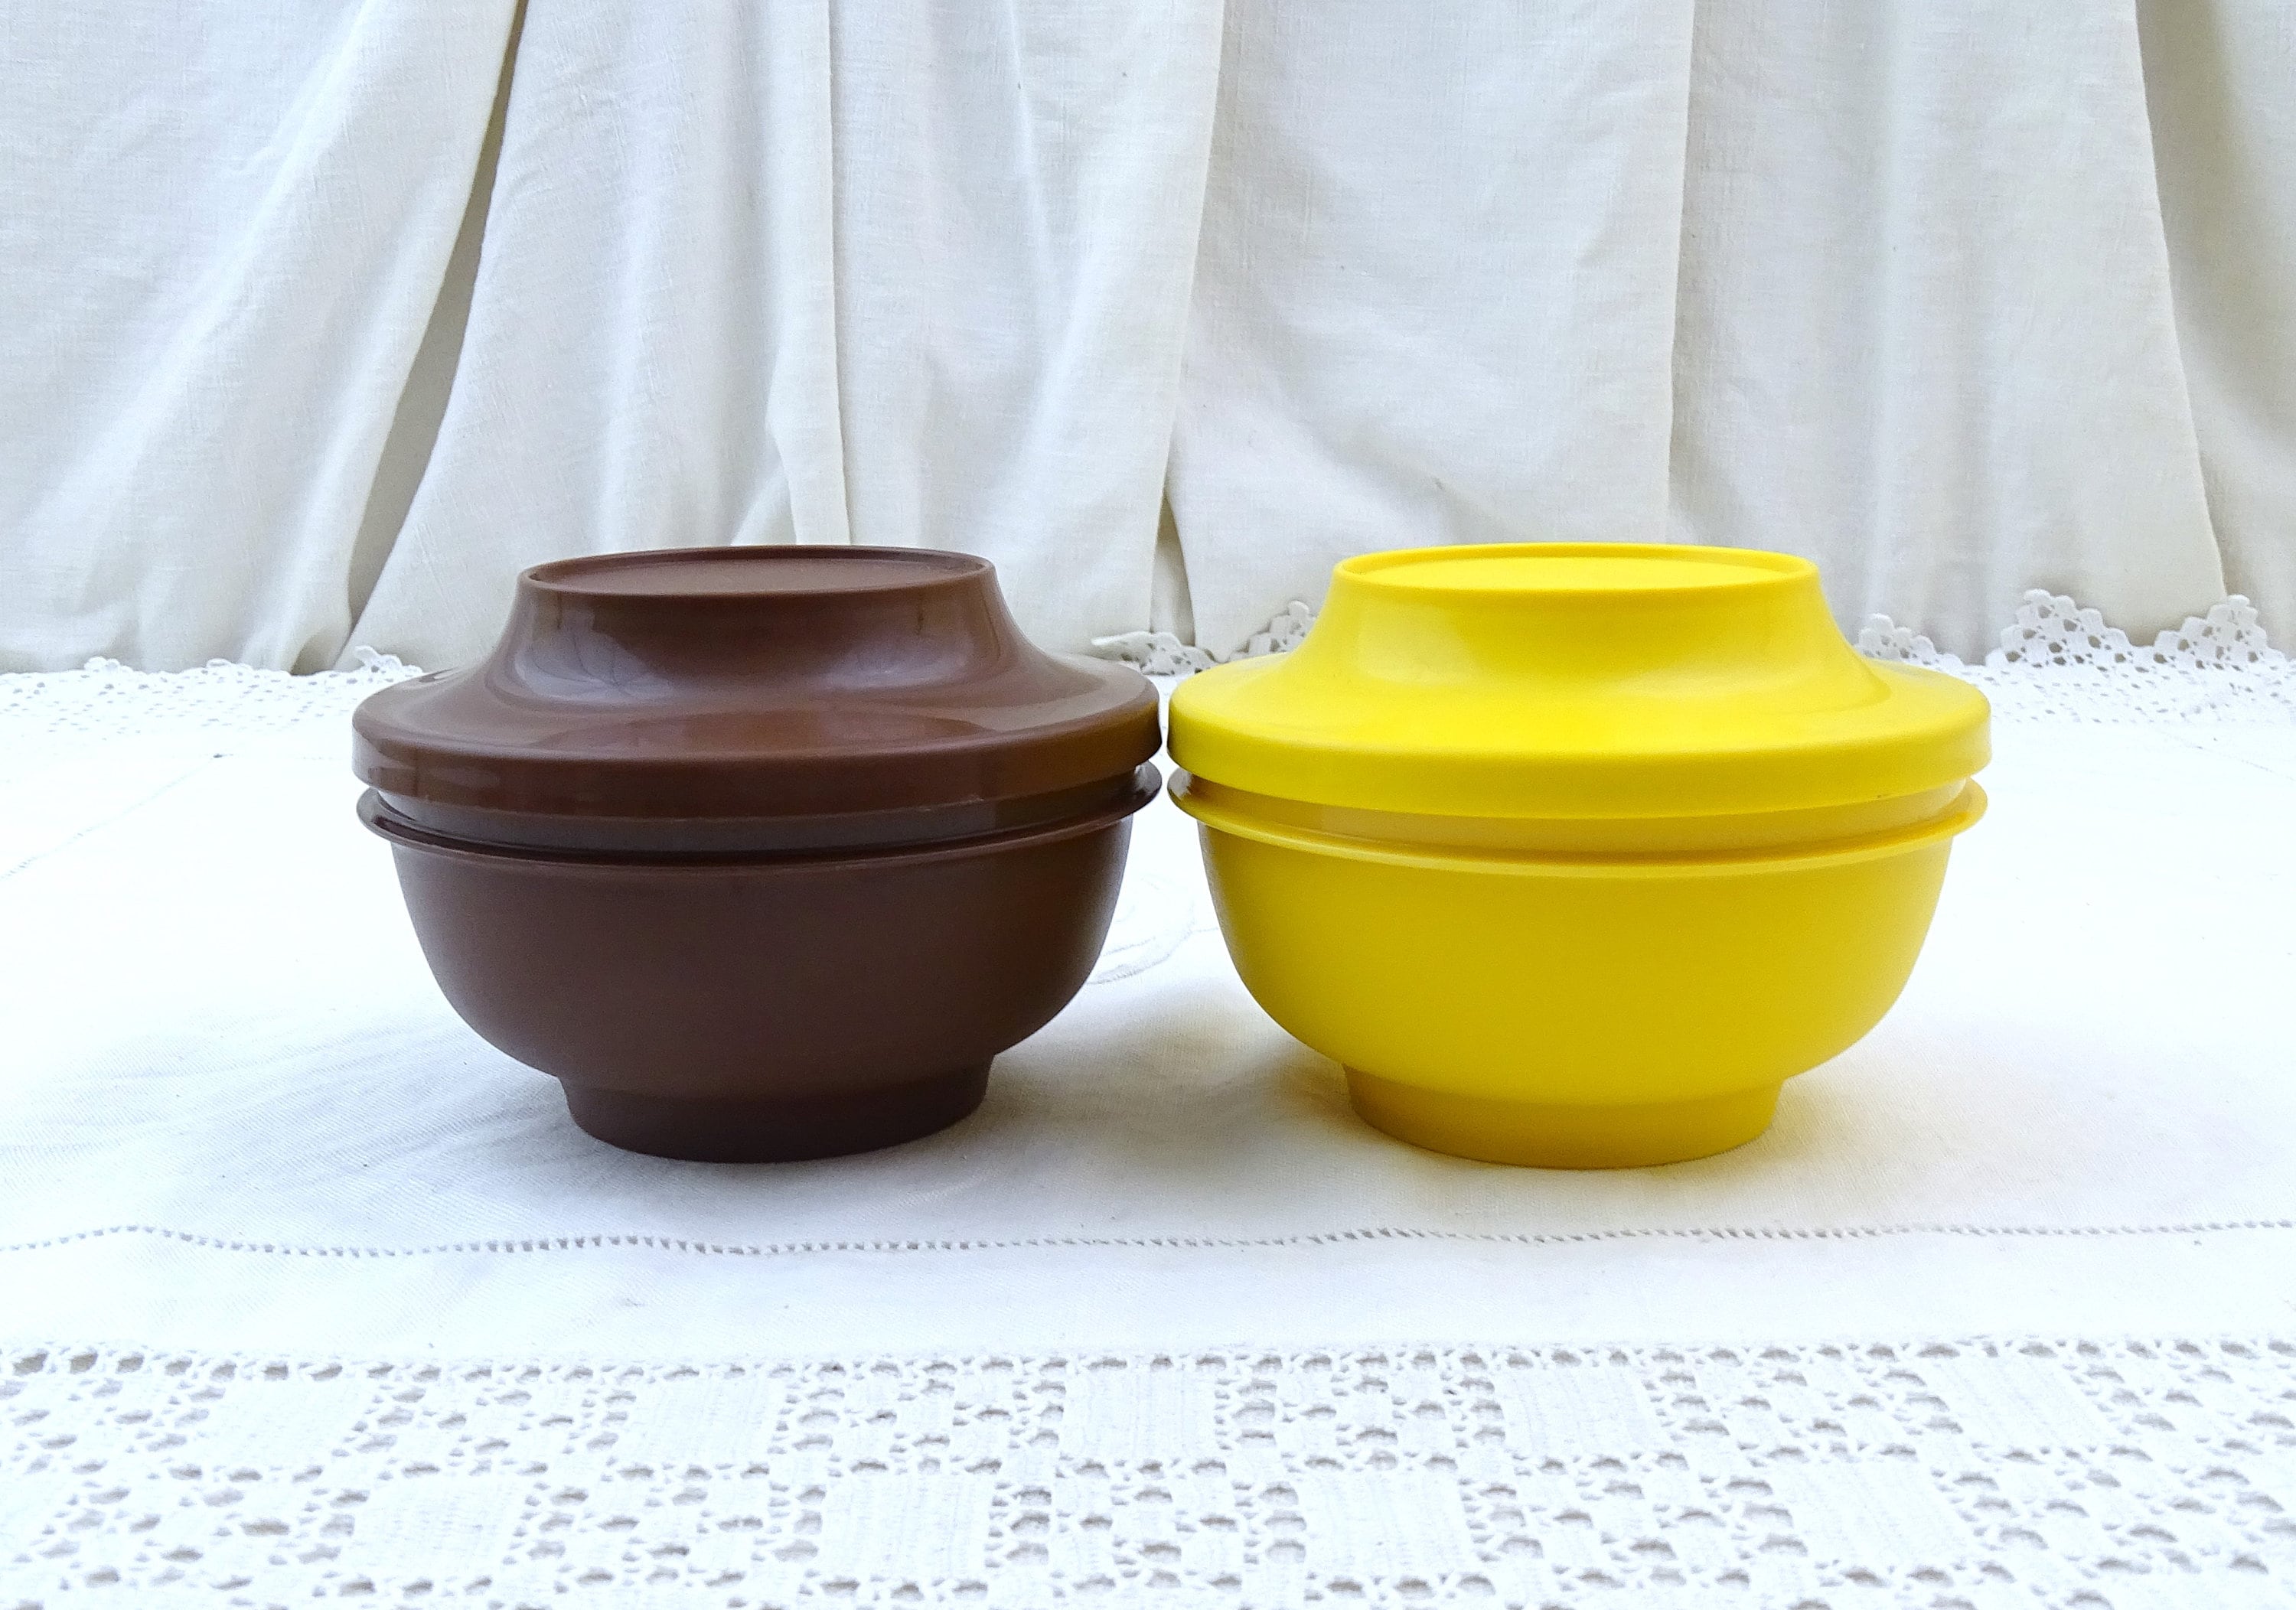 Set of 3 Vintage Tupperware Round Bowls W/lids, 1436 Seal N Serve